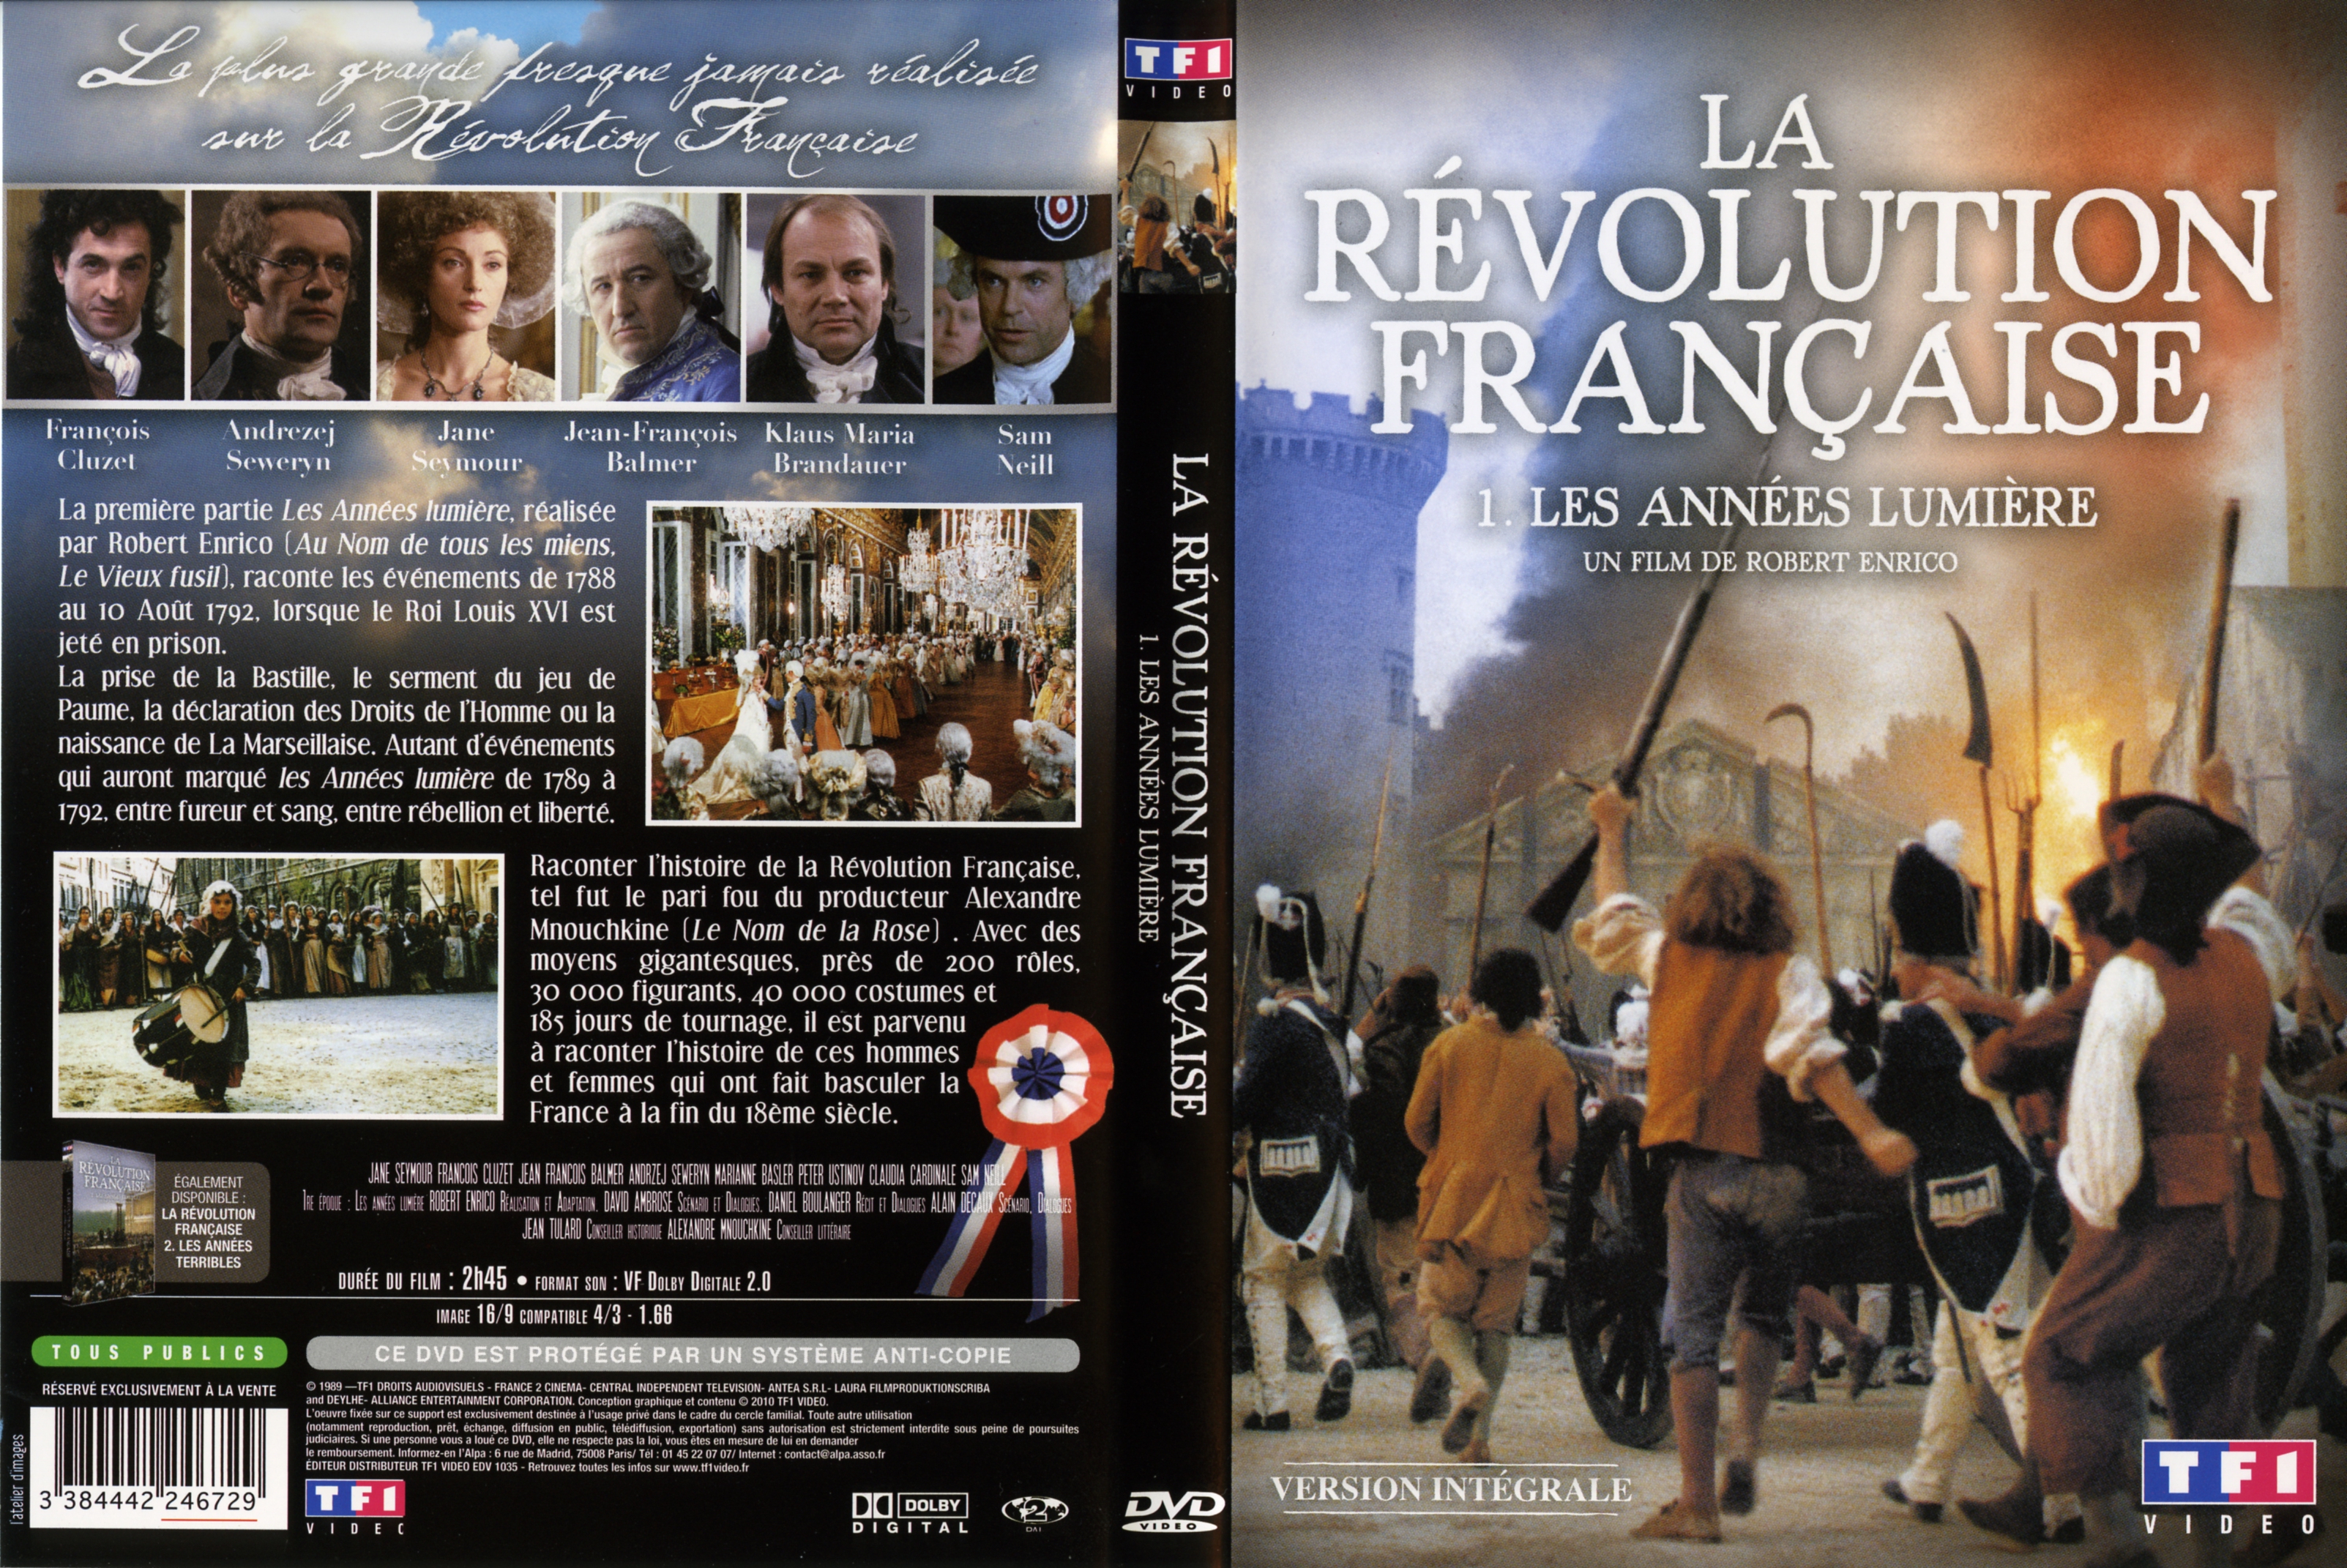 Jaquette DVD La rvolution Francaise DVD 1